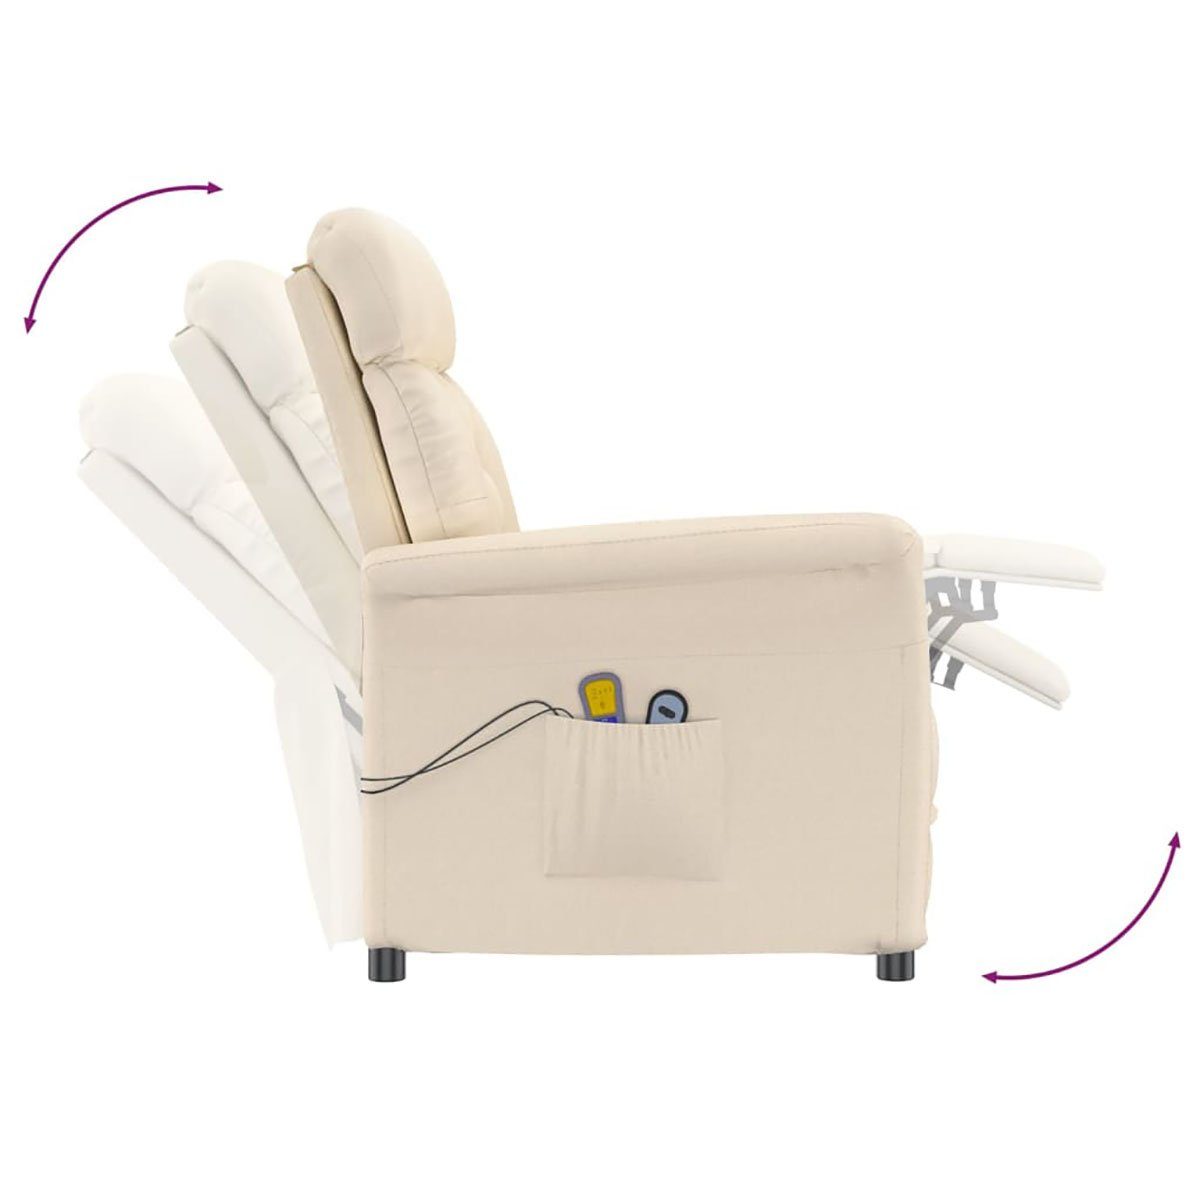 Beige DOTMALL Mikrofaser Massagesessel Elektrischer Stuhl